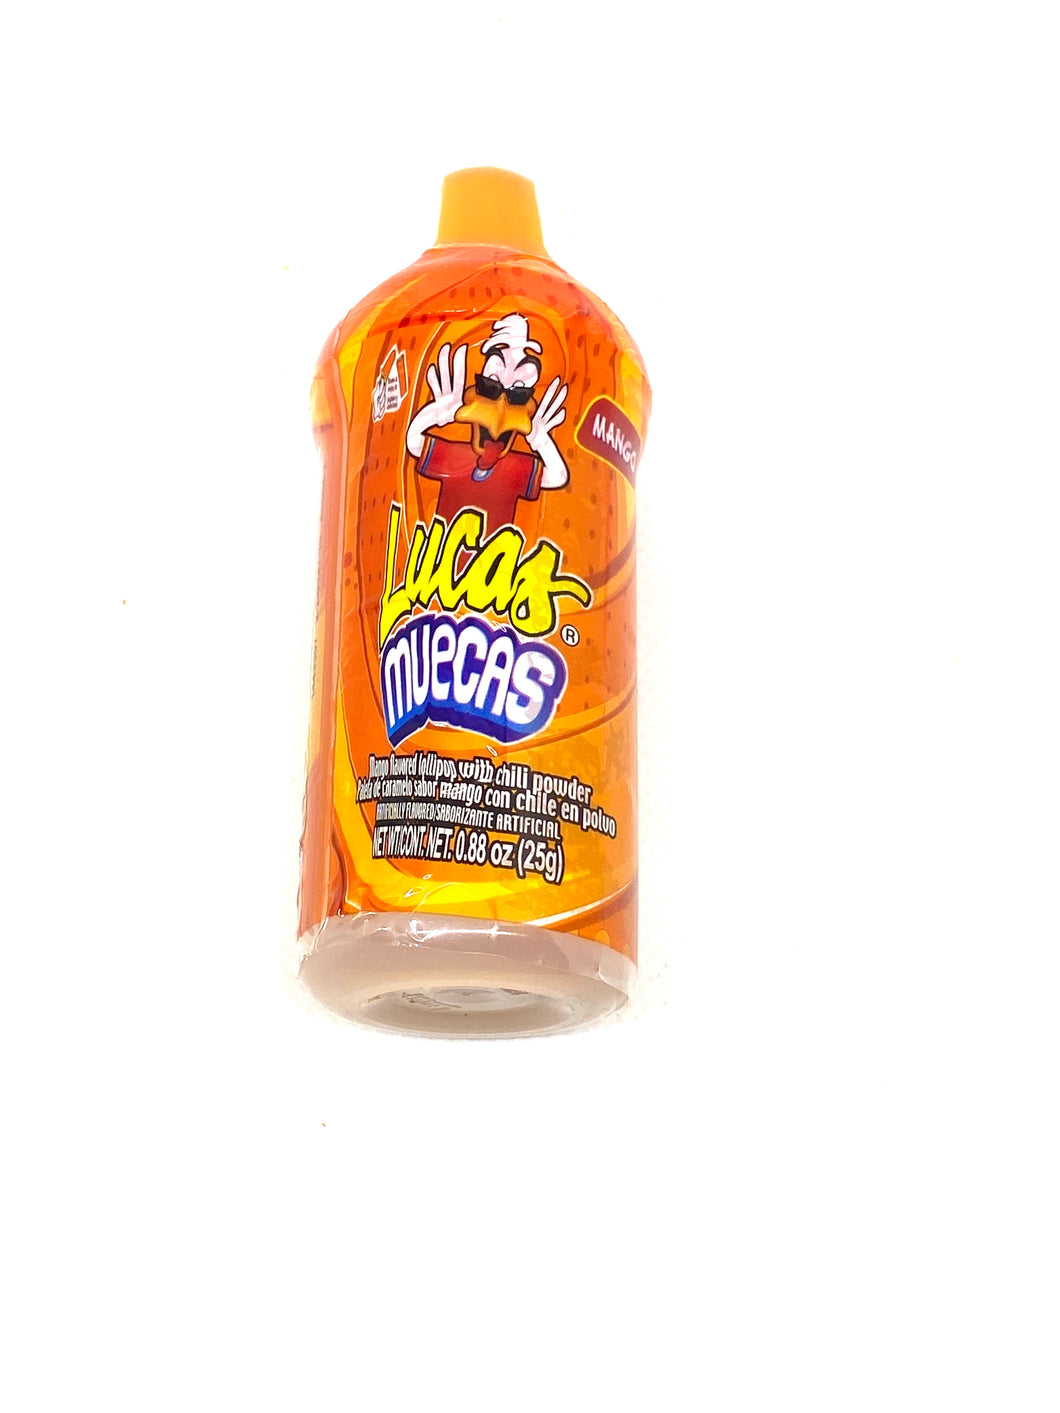 Lucas muecas orange is mango flavor